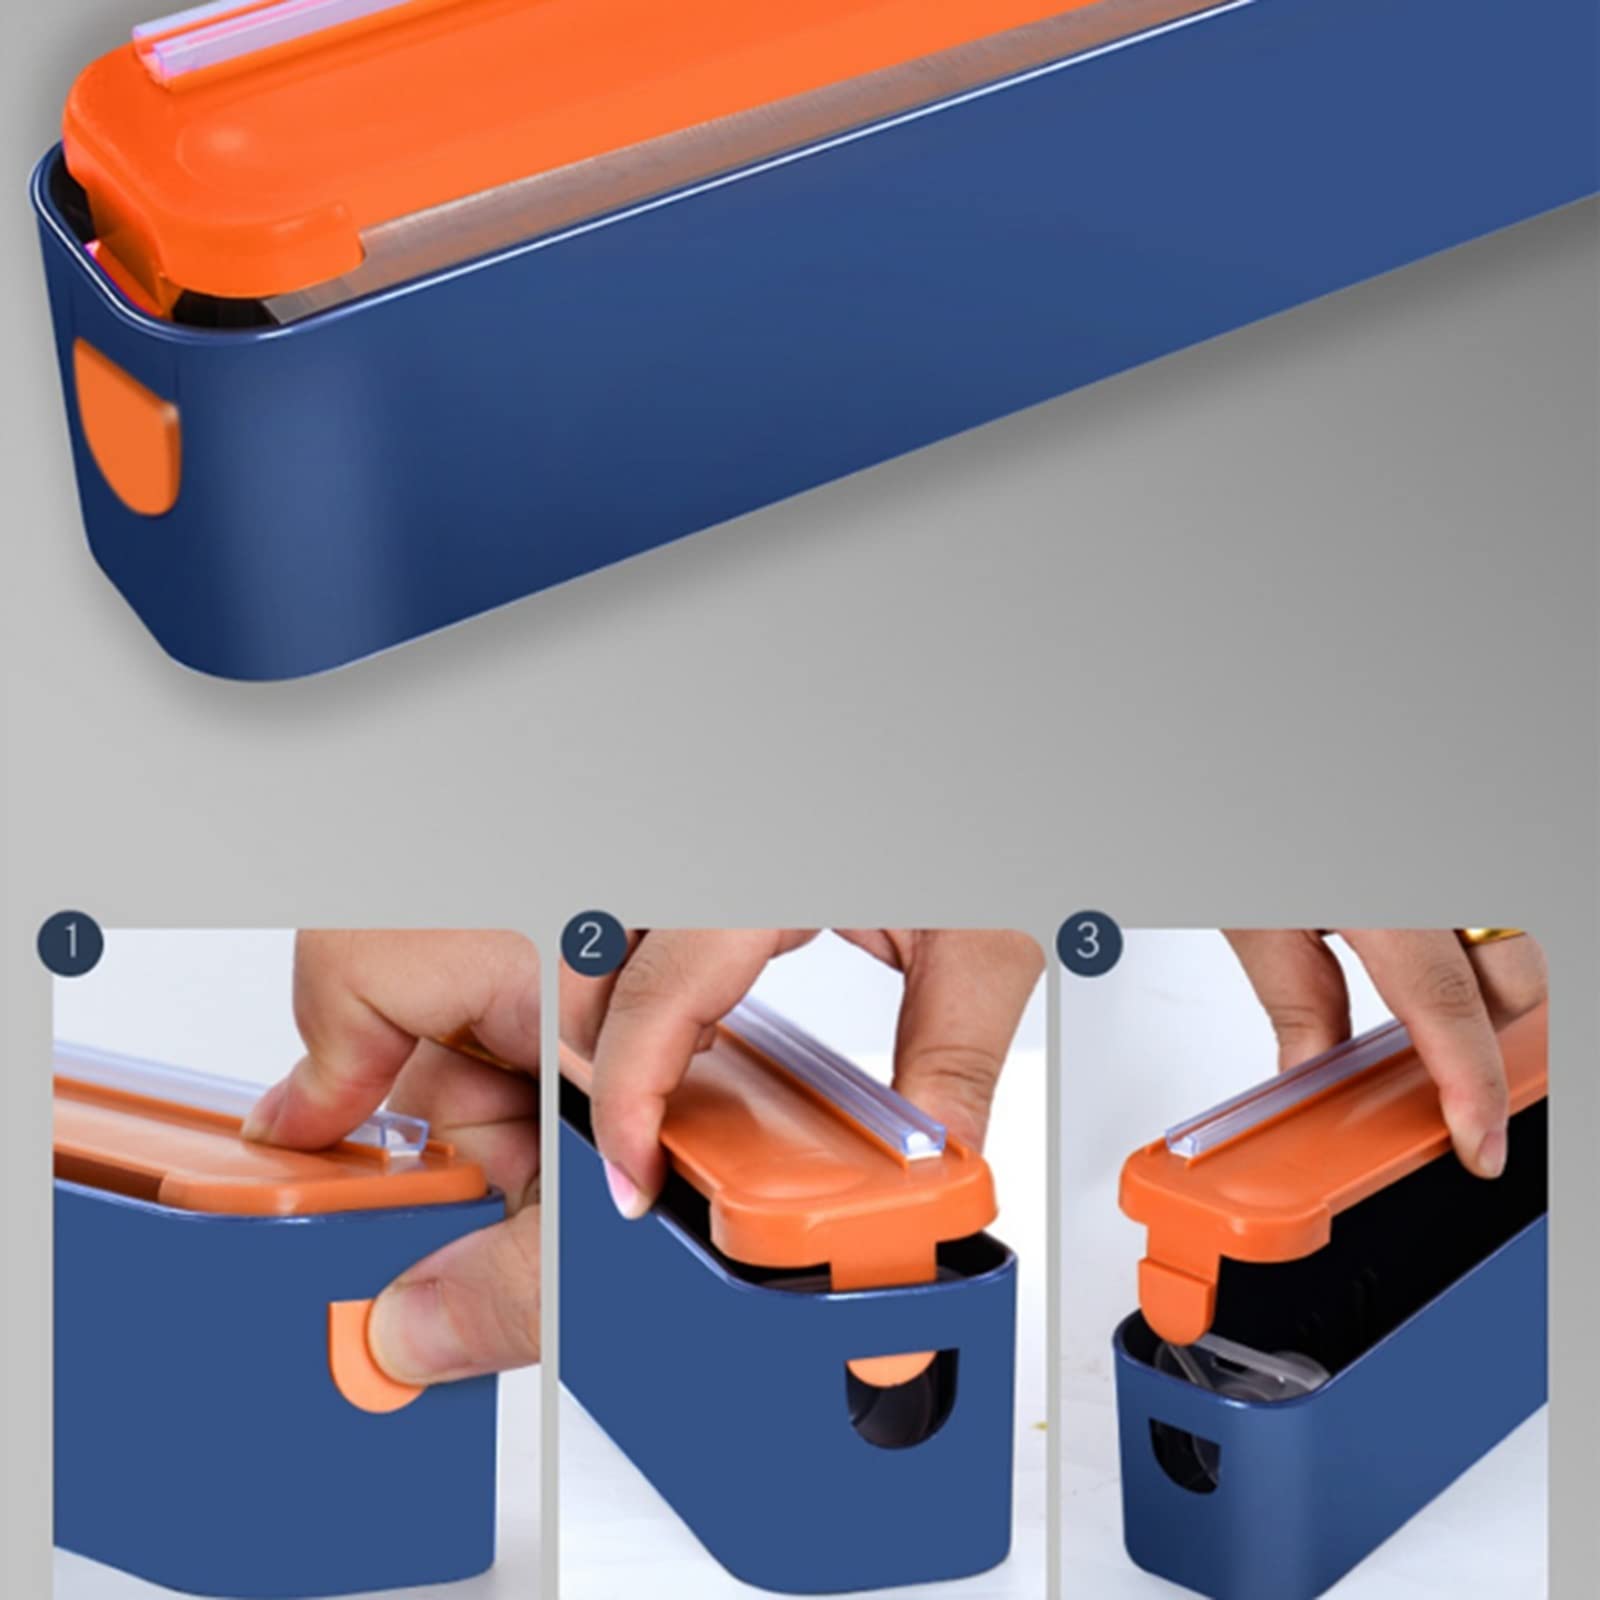 Reusable magnetic plastic wrap cutter